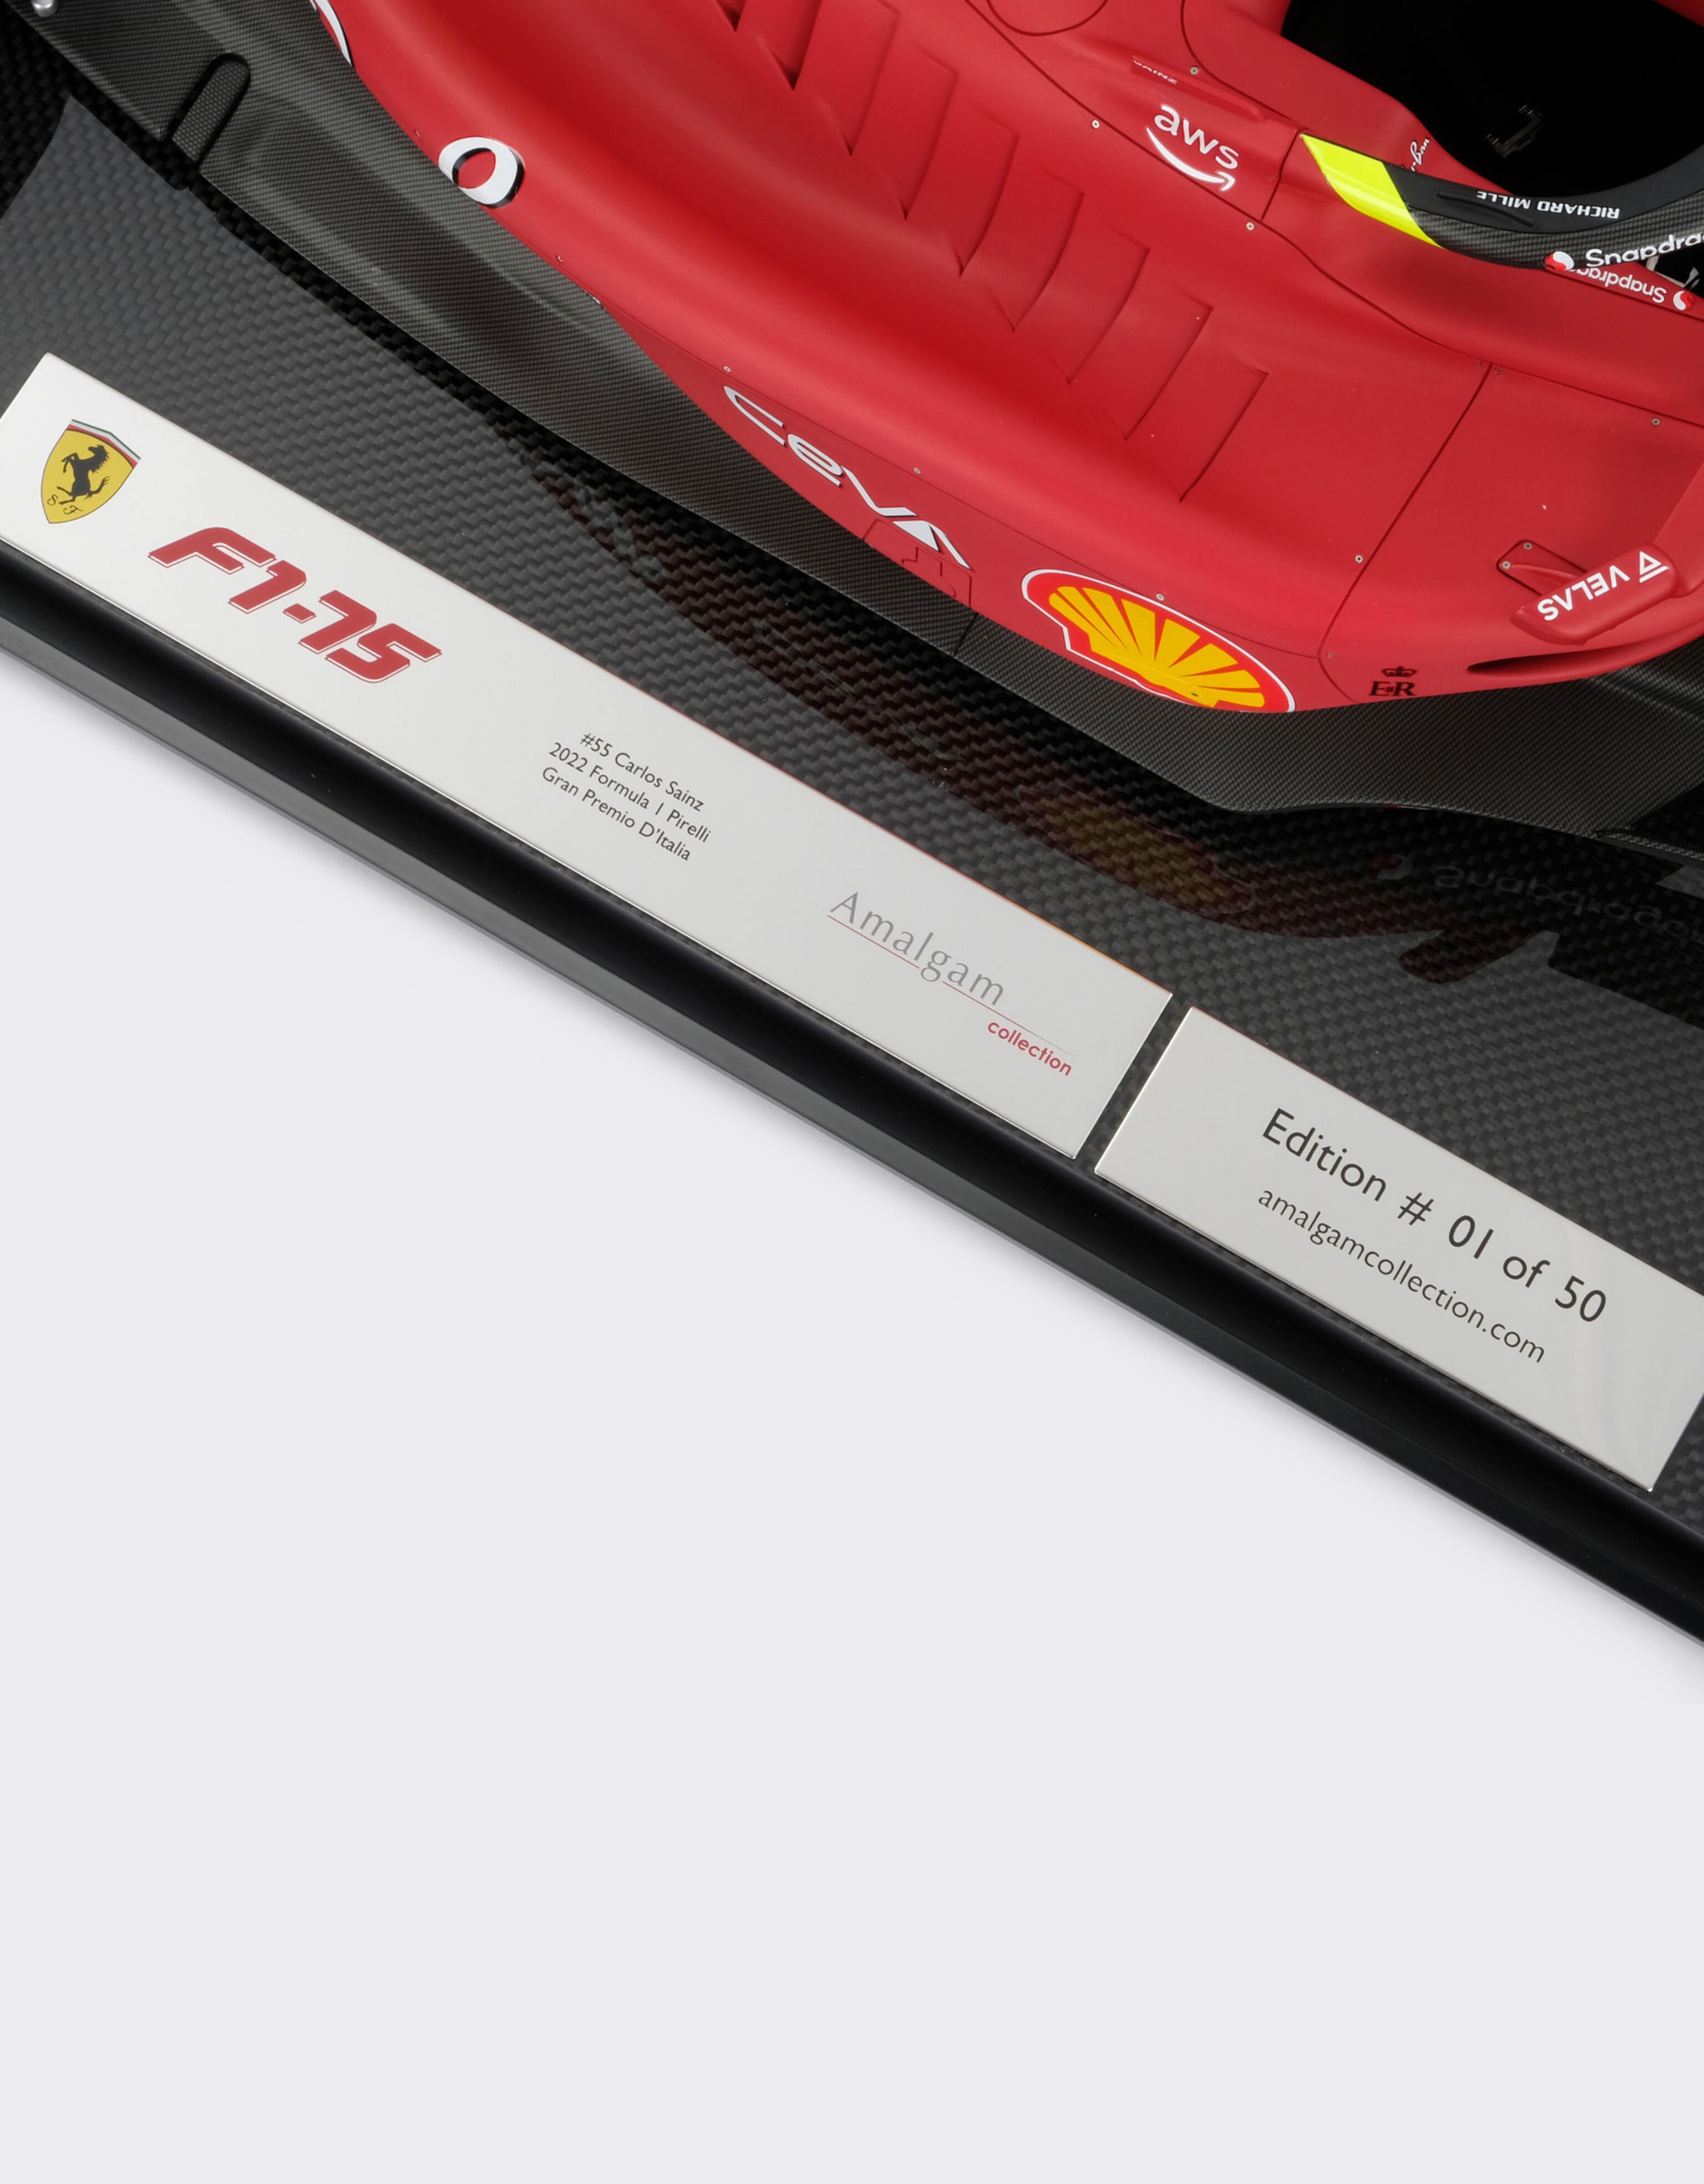 Ferrari Maqueta Ferrari F1-75 a escala 1:8 Rosso Corsa F1021f